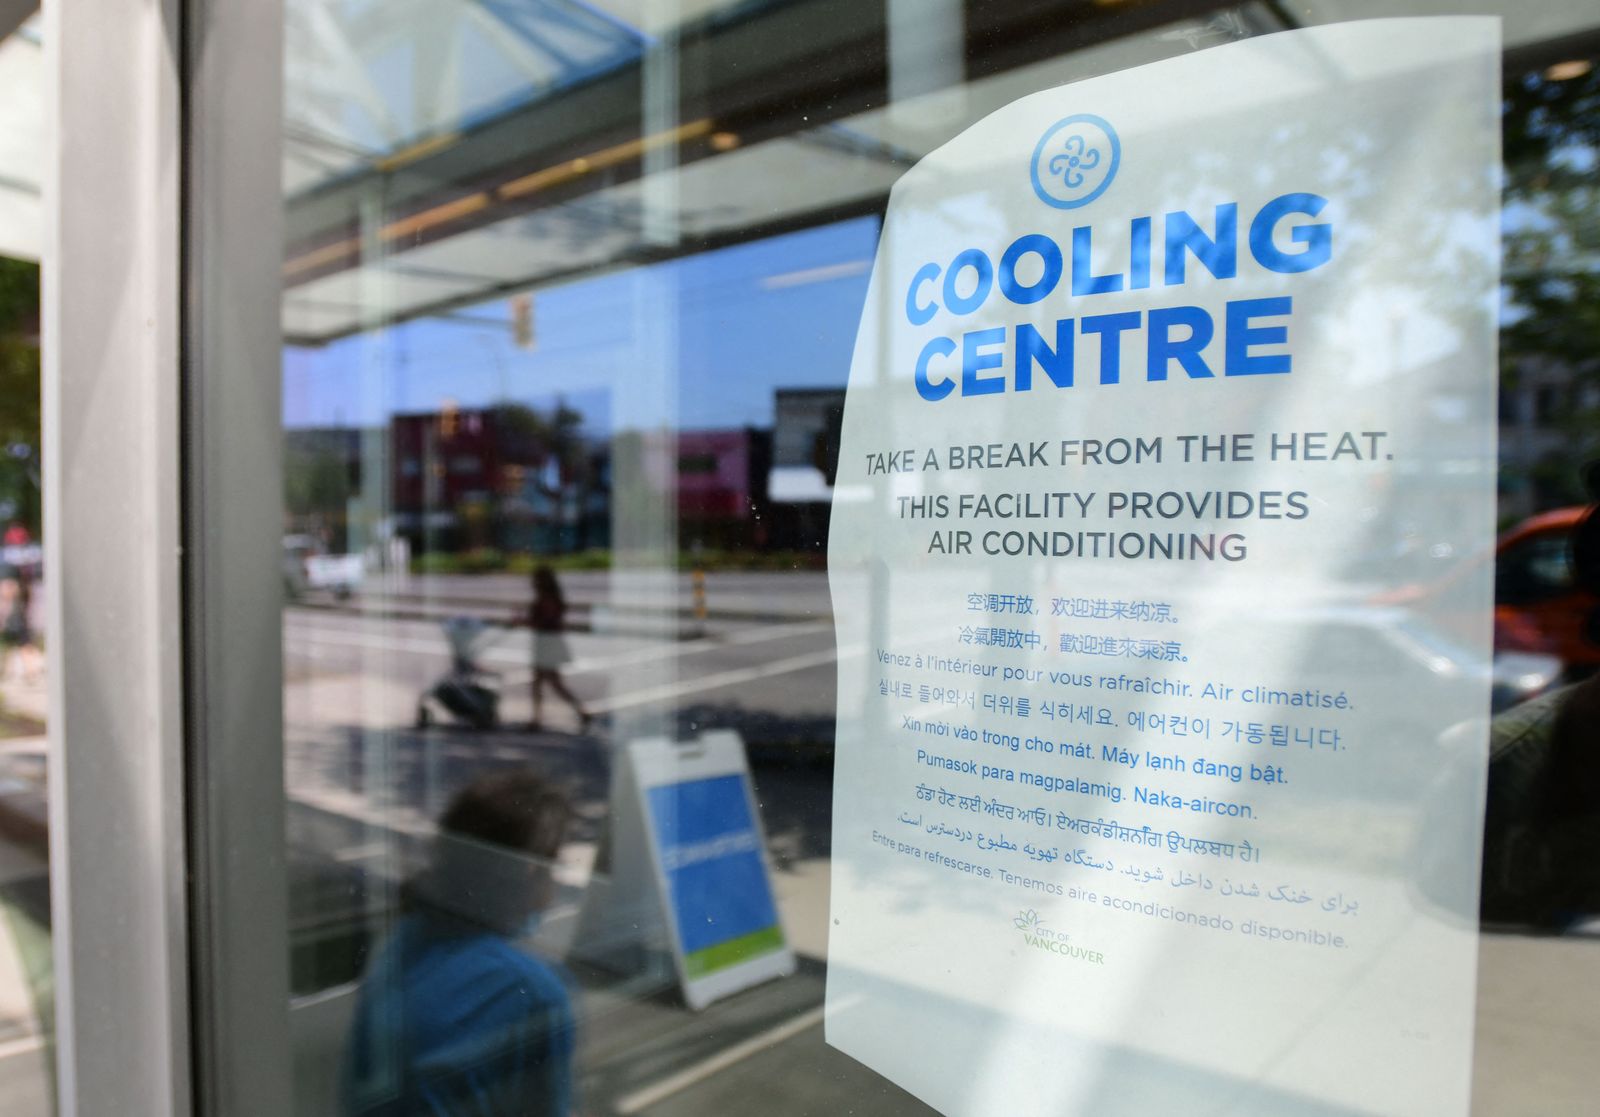 لافتة ترحيب على باب مركز هيلكريست المجتمعي المكيّف خلال موجة الطقس الشديدة الحرارة في كندا - 30 يونيو 2021 - AFP